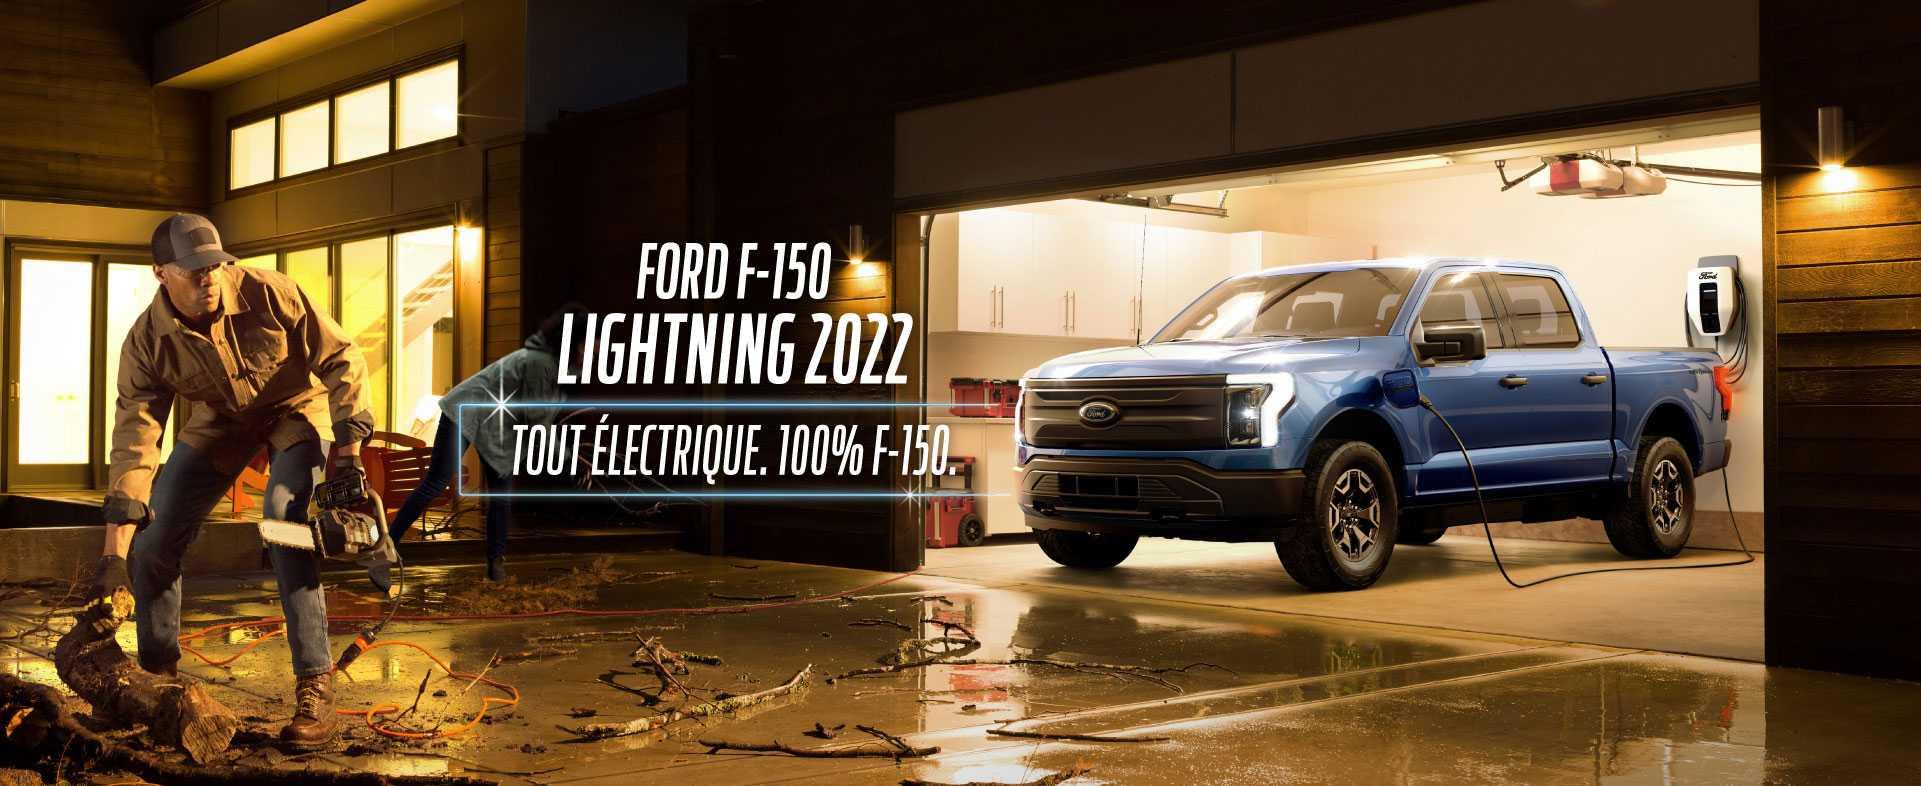 Ford F-150 Lightning 2022